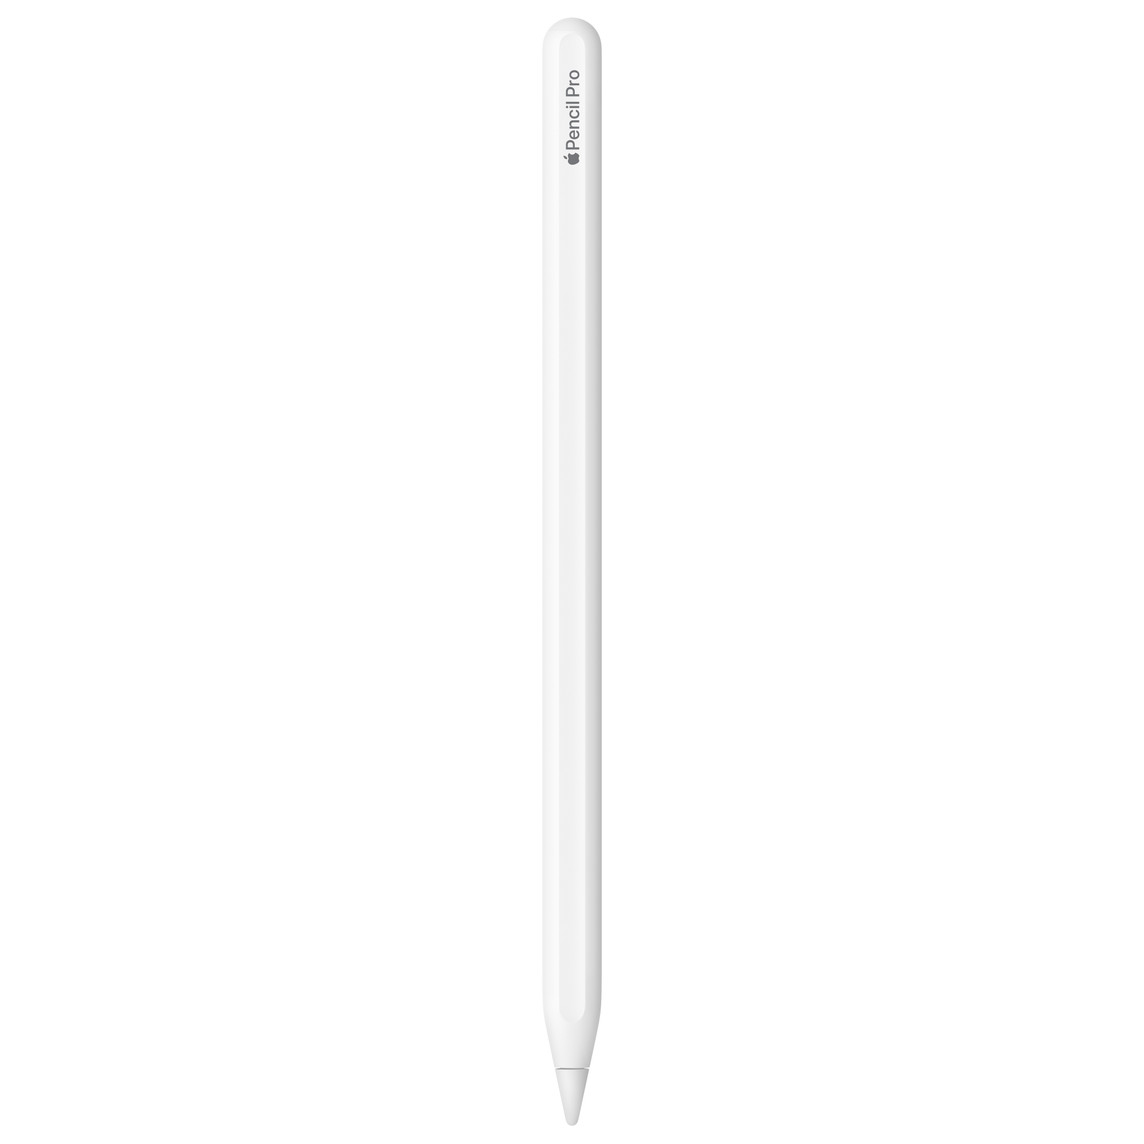 Apple Pencil Pro branco, com a gravação Apple Pencil Pro, em que a palavra Apple é representada pelo logotipo da Apple.